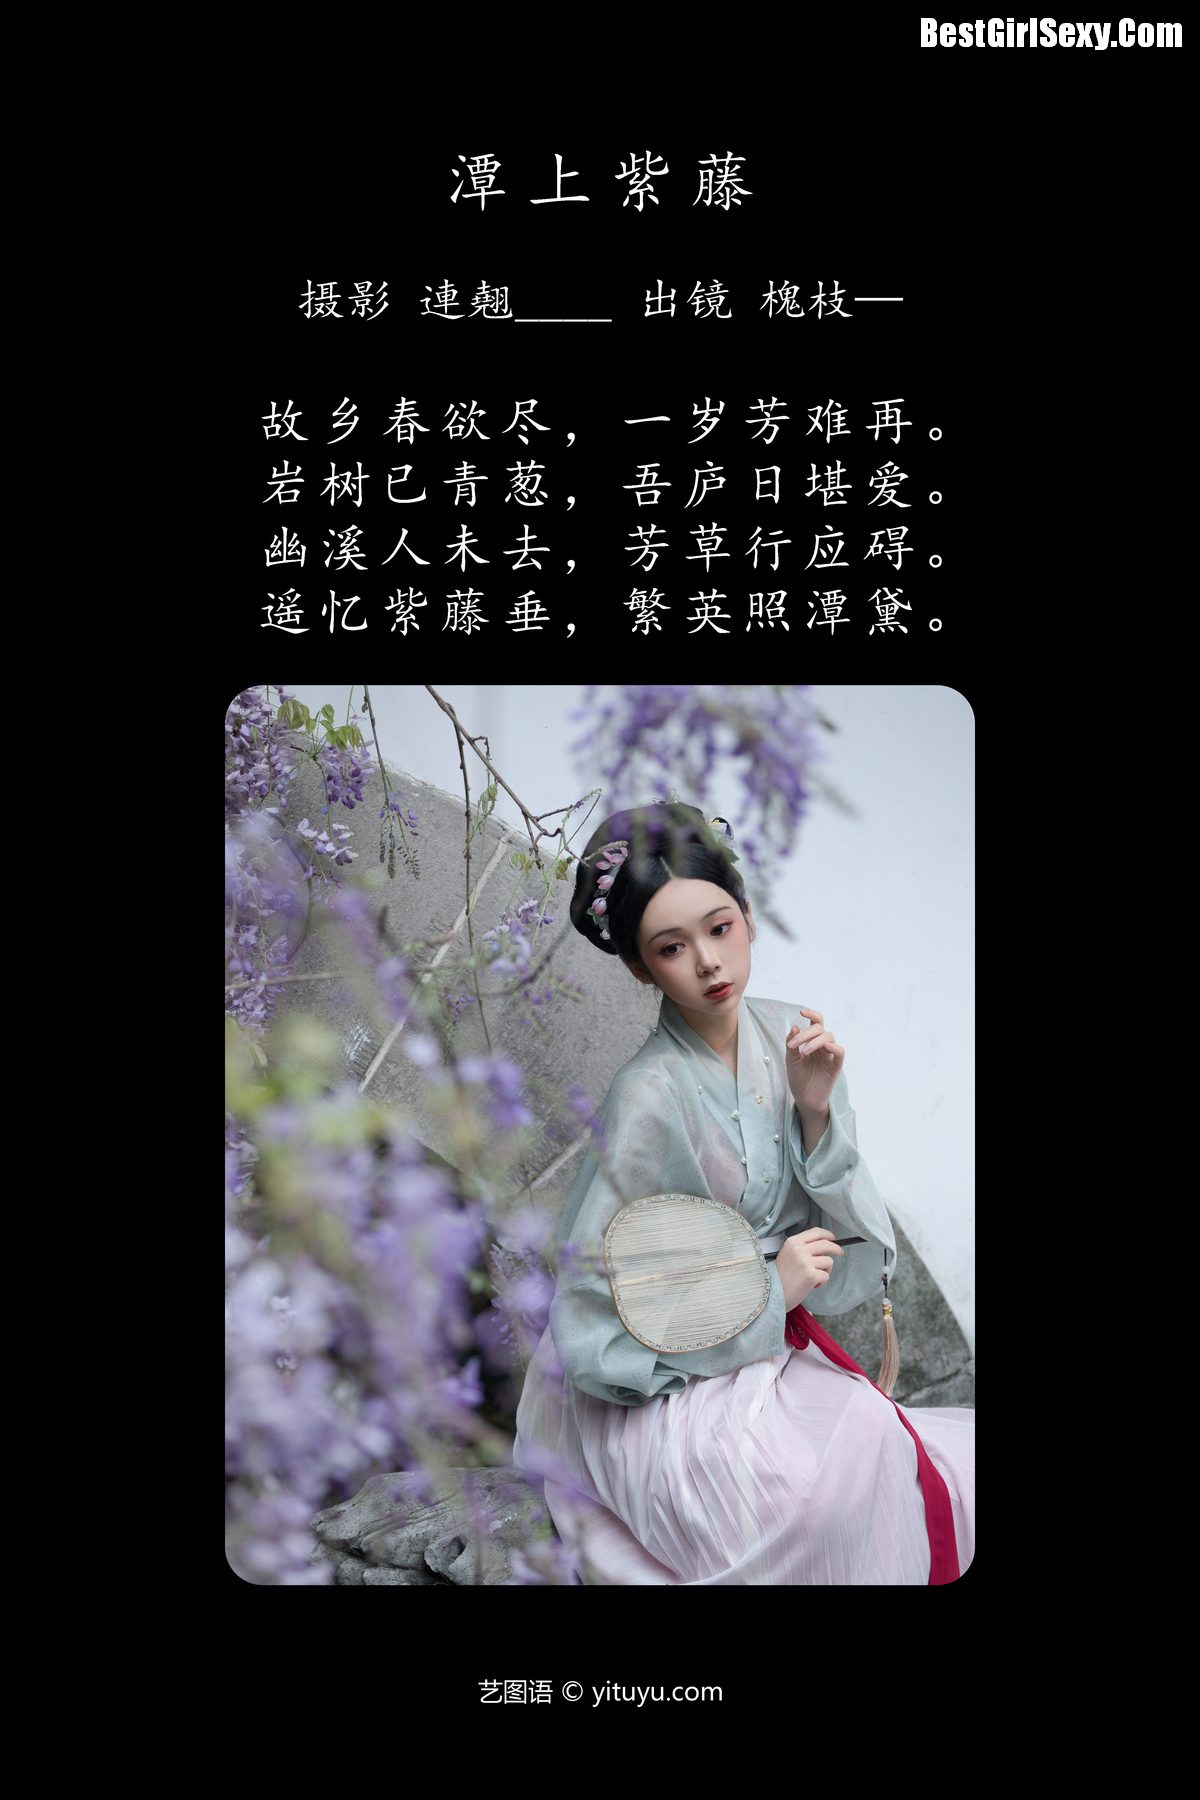 YiTuYu艺图语 Vol 4096 Huai Zhi 0002 4774557767.jpg